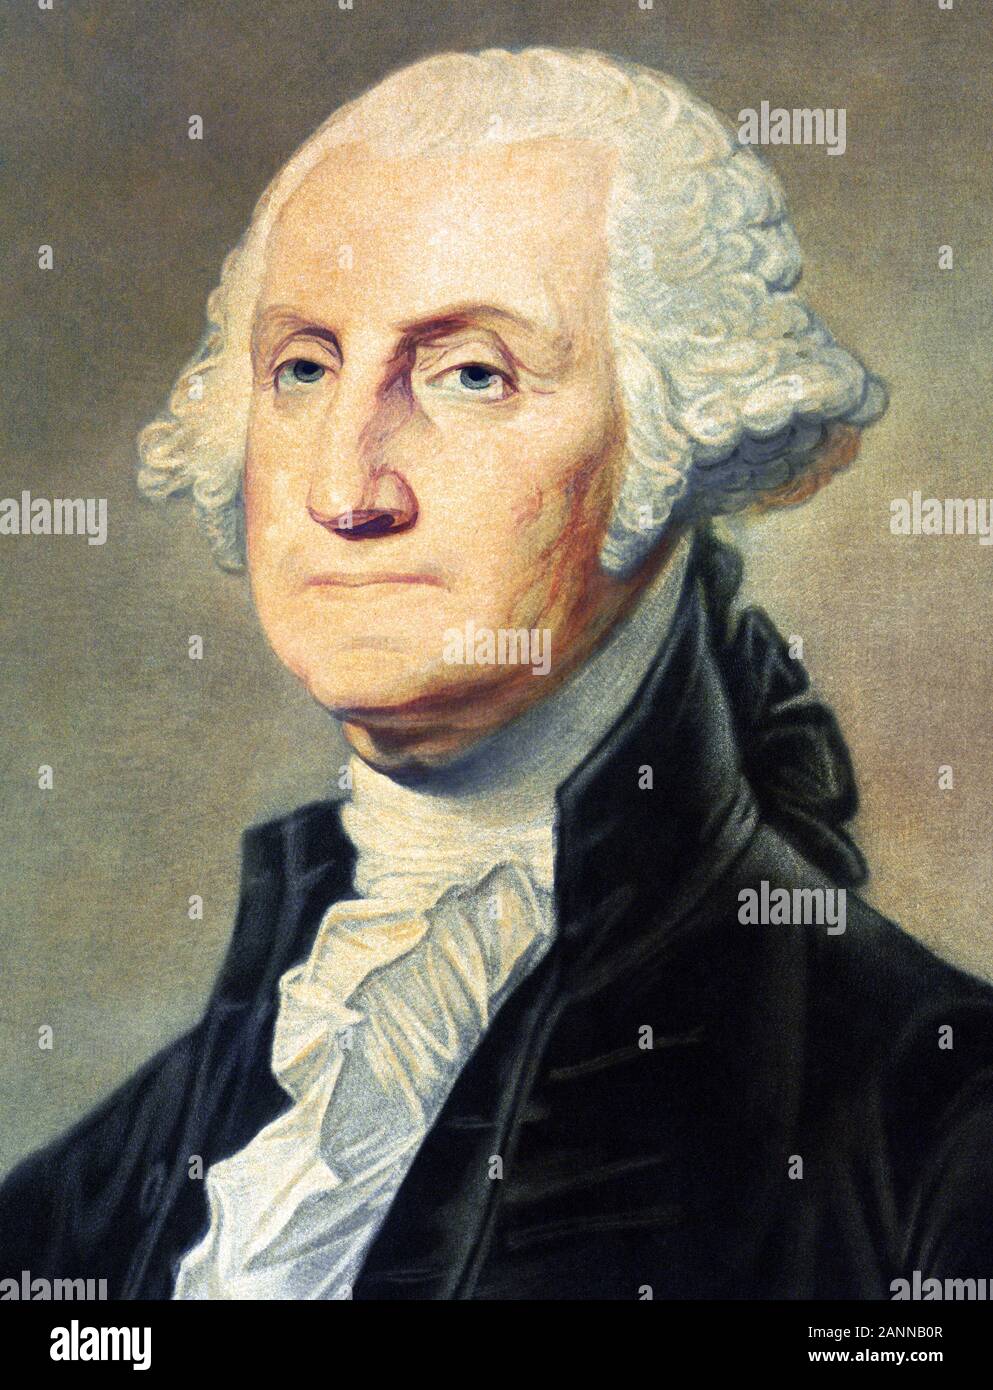 Vintage ritratto di George Washington (1732 - 1799) - Comandante dell'esercito continentale nella guerra rivoluzionaria americana / la guerra di indipendenza (1775 - 1783) e il primo Presidente degli Stati Uniti (1789 - 1797). Dettaglio di una stampa circa 1813 da Freeman di Philadelphia. Foto Stock